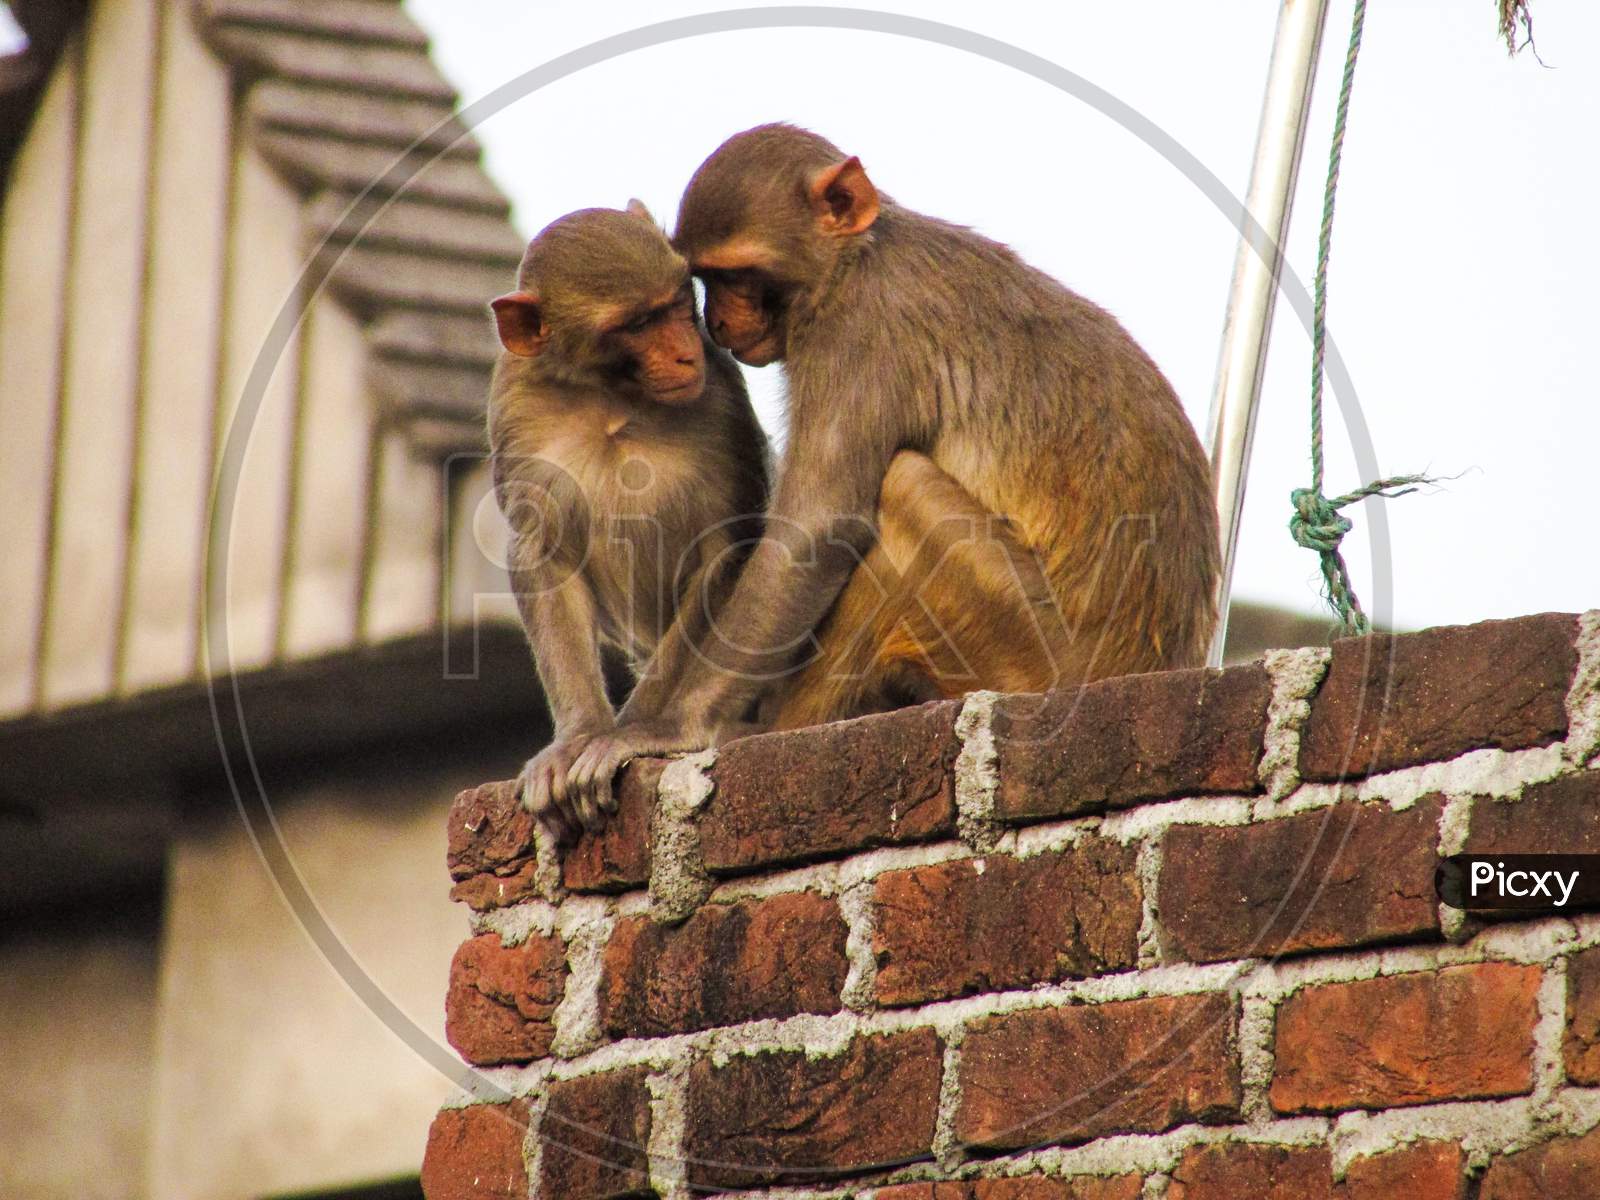 Talking monkeys